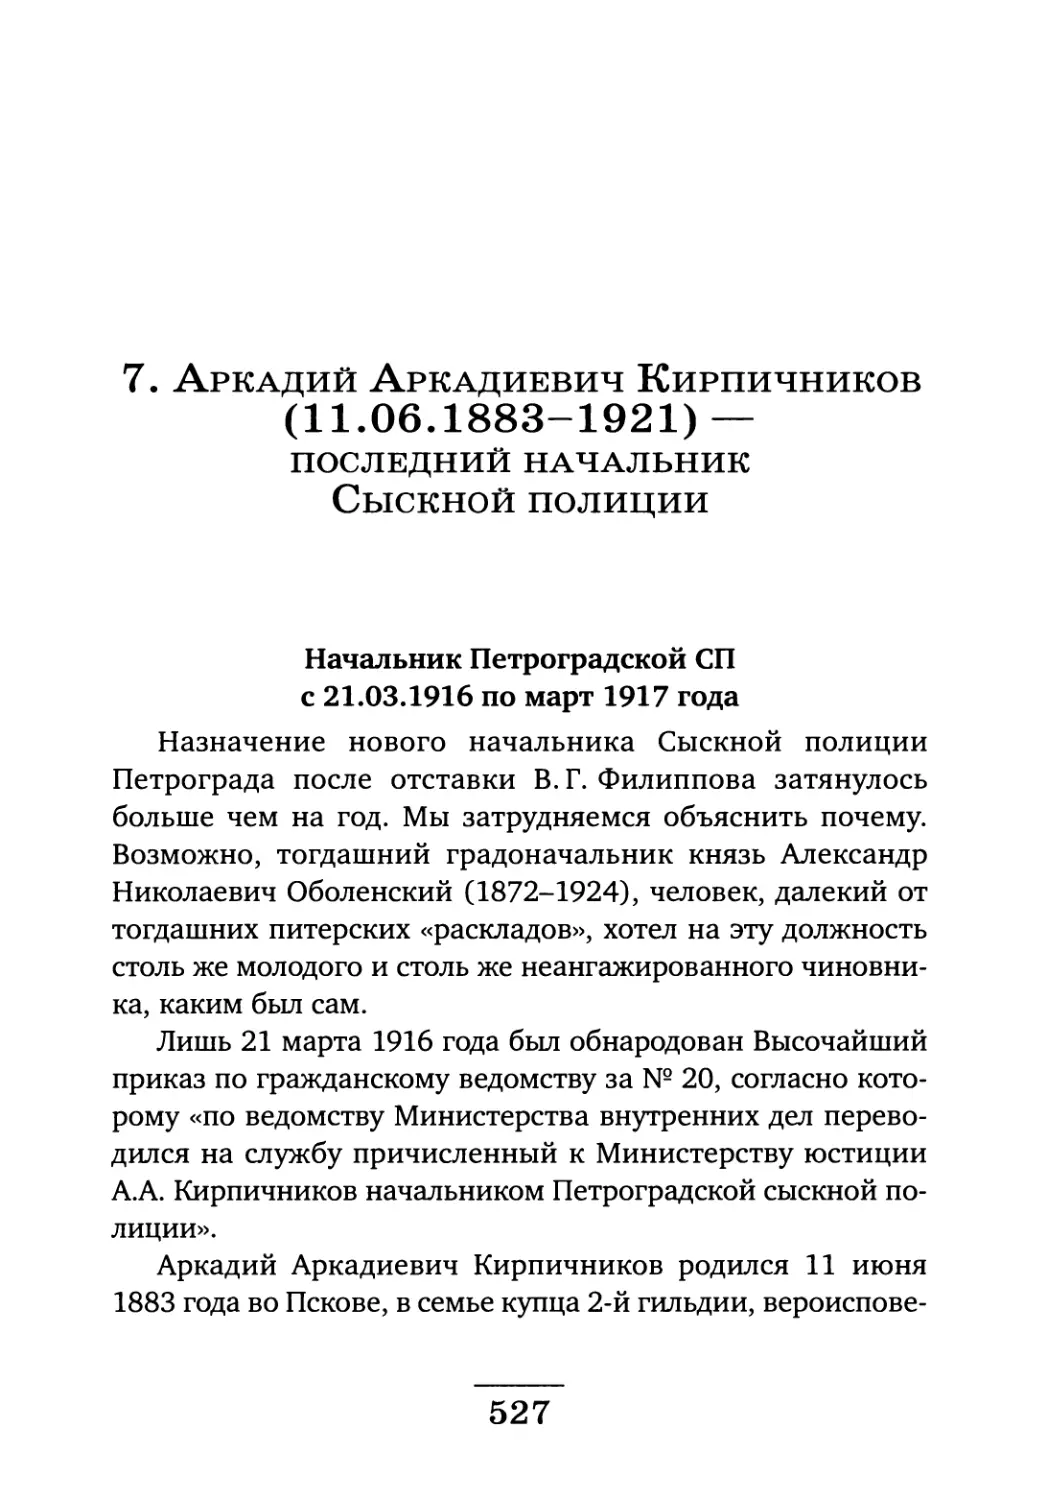 Начальник Петроградской СП с 21.03.1916 по март 1917 года